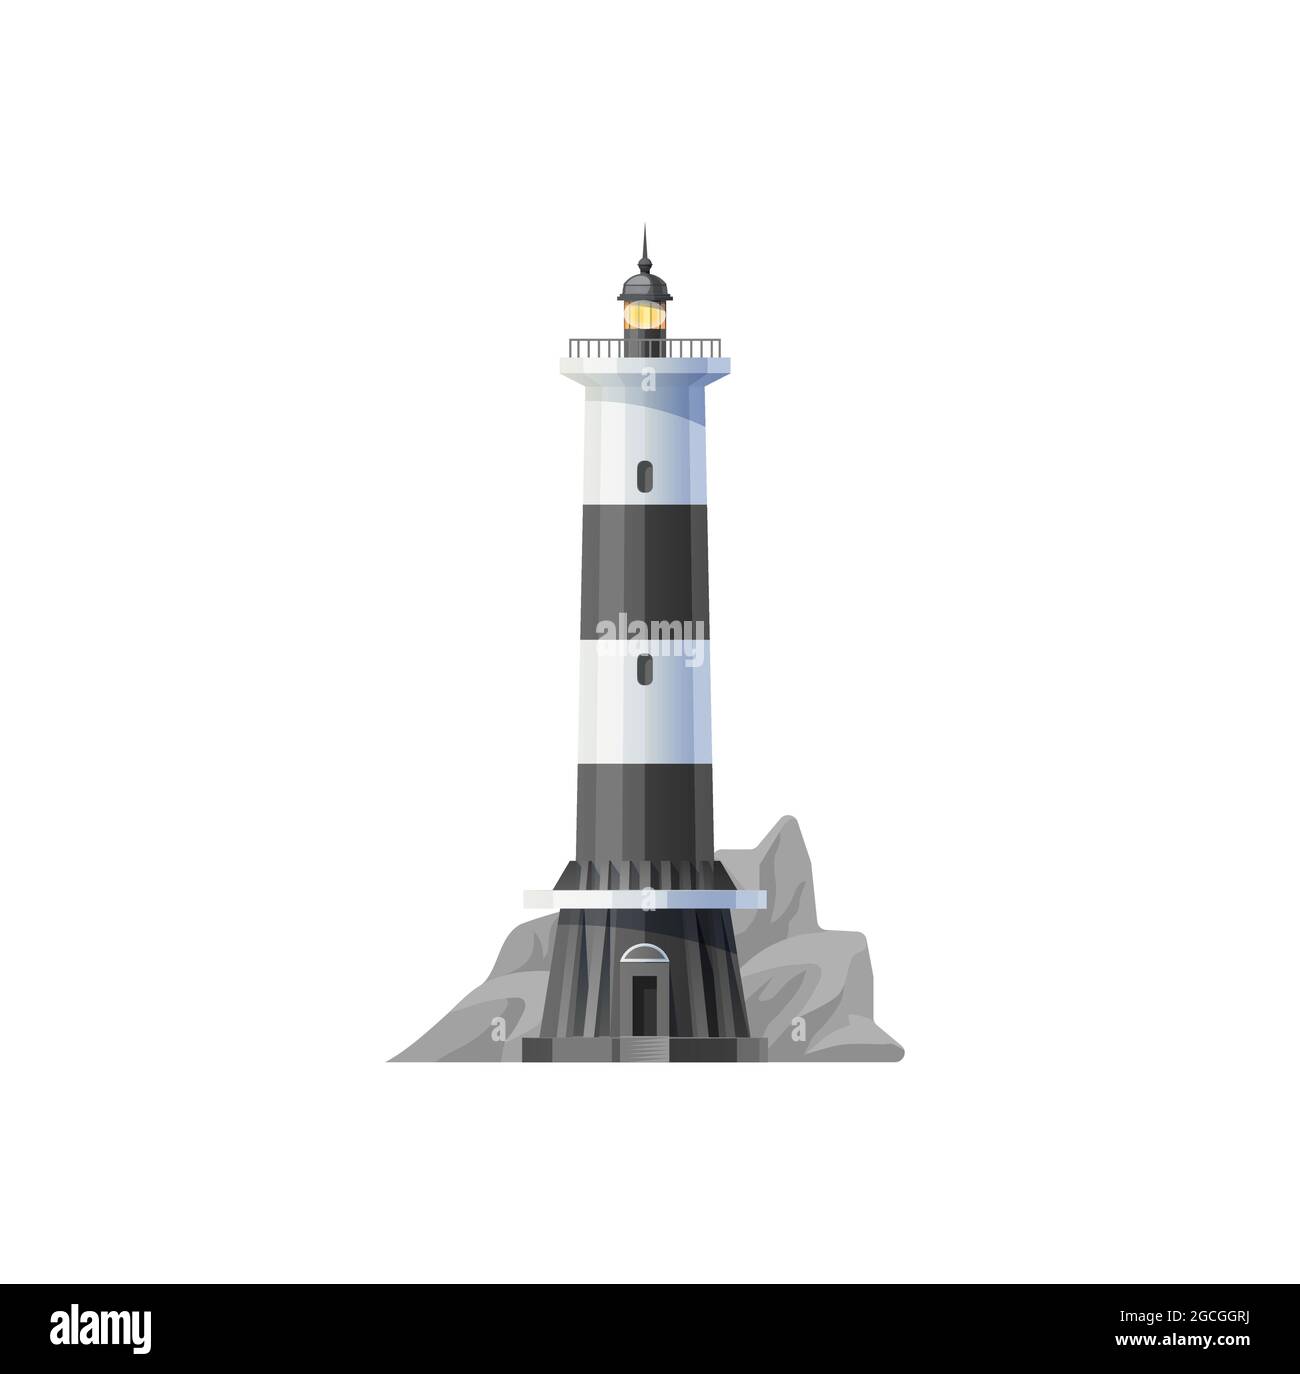 Faro icono vectorial, faro o faro de luz del mar y la torre de la costa en las rocas. Faro de luz para la navegación de los buques y la seguridad de la navegación marítima, el mar harbo Ilustración del Vector